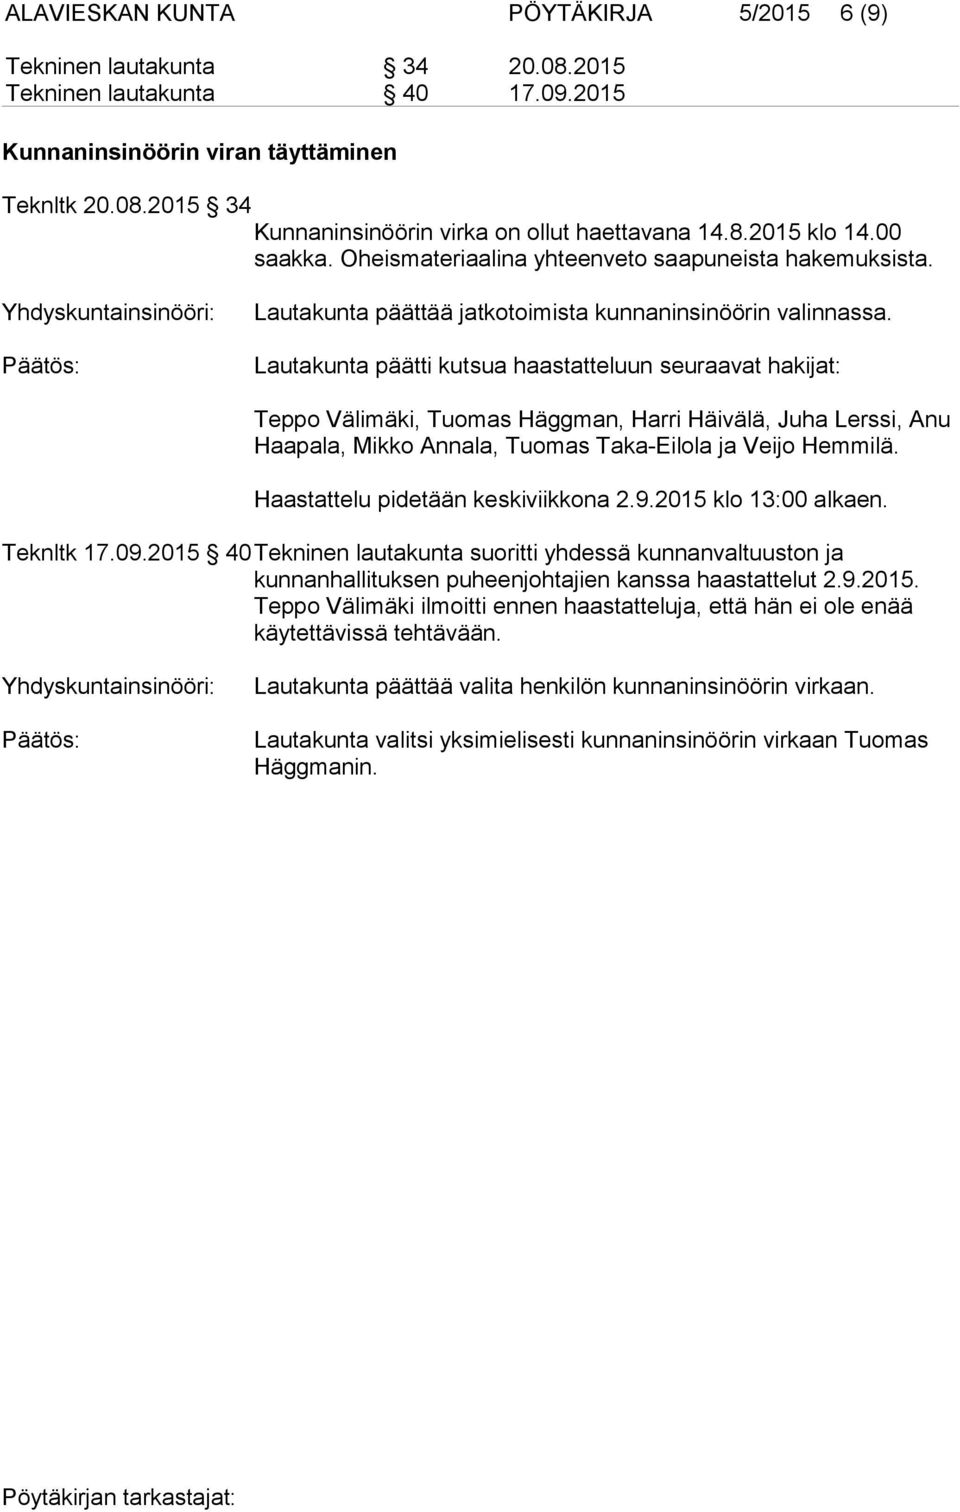 Lautakunta päätti kutsua haastatteluun seuraavat hakijat: Teppo Välimäki, Tuomas Häggman, Harri Häivälä, Juha Lerssi, Anu Haapala, Mikko Annala, Tuomas Taka-Eilola ja Veijo Hemmilä.